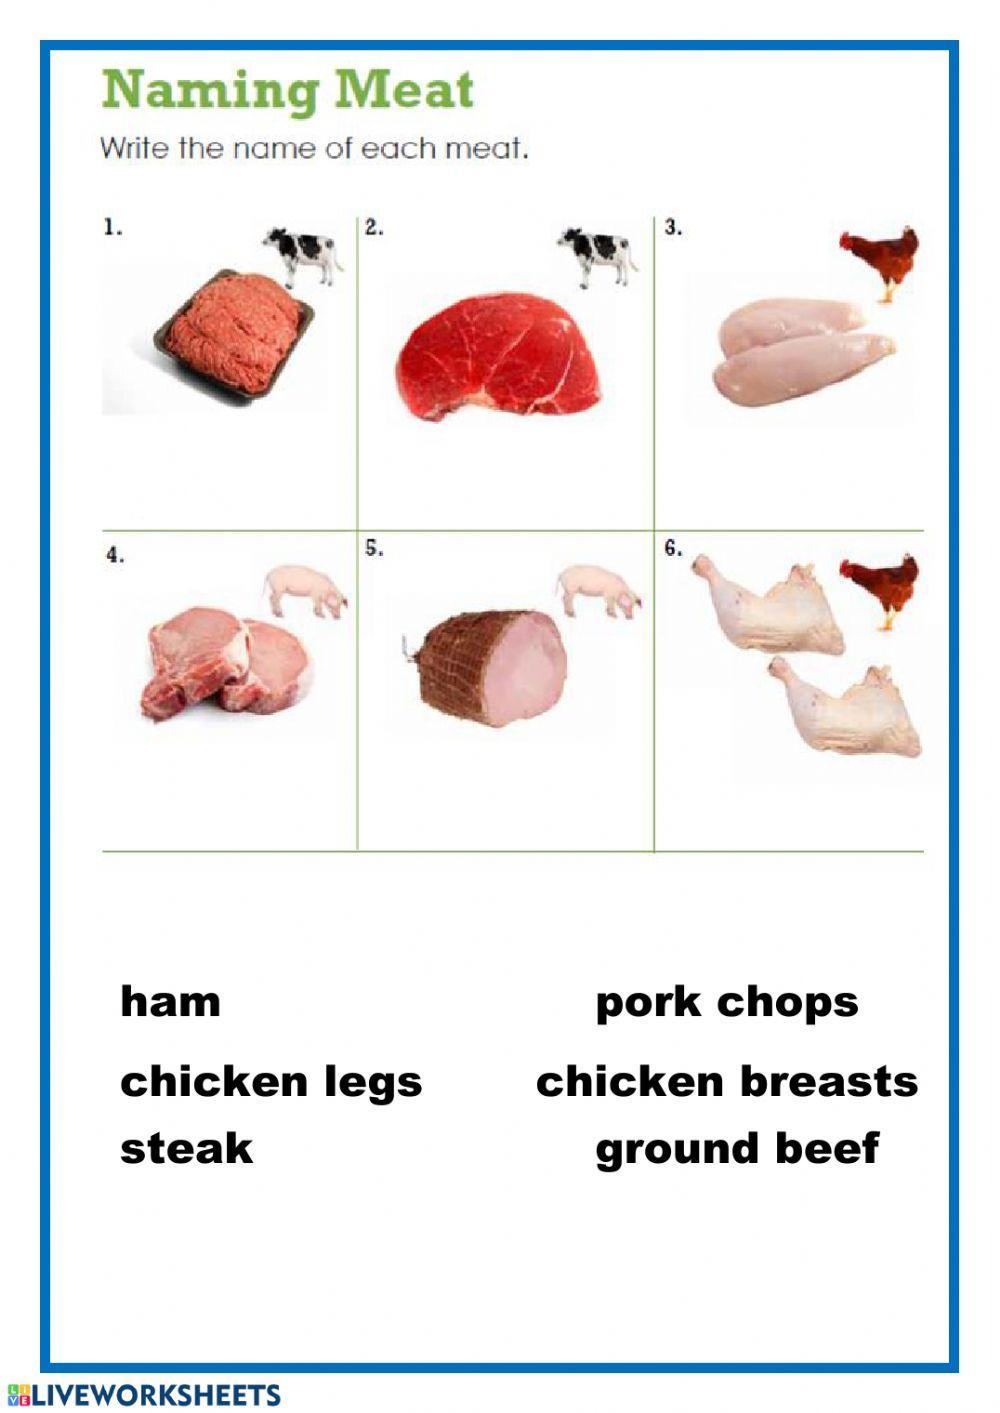 Naming meat-1